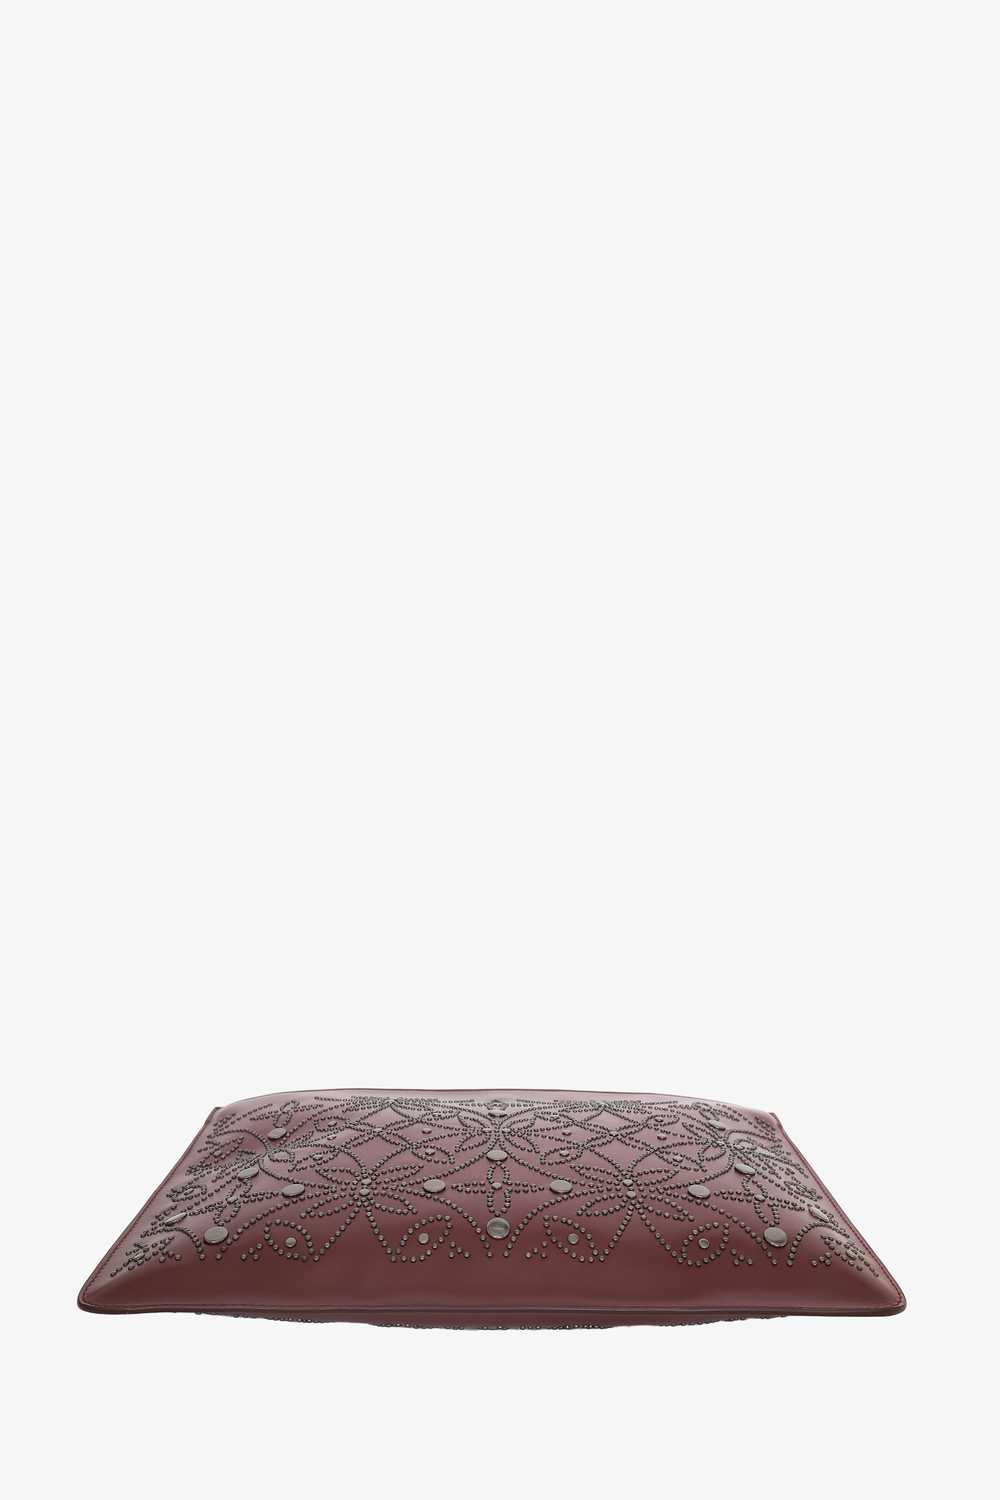 Alaïa Burgundy Leather Studded Pouch - image 5